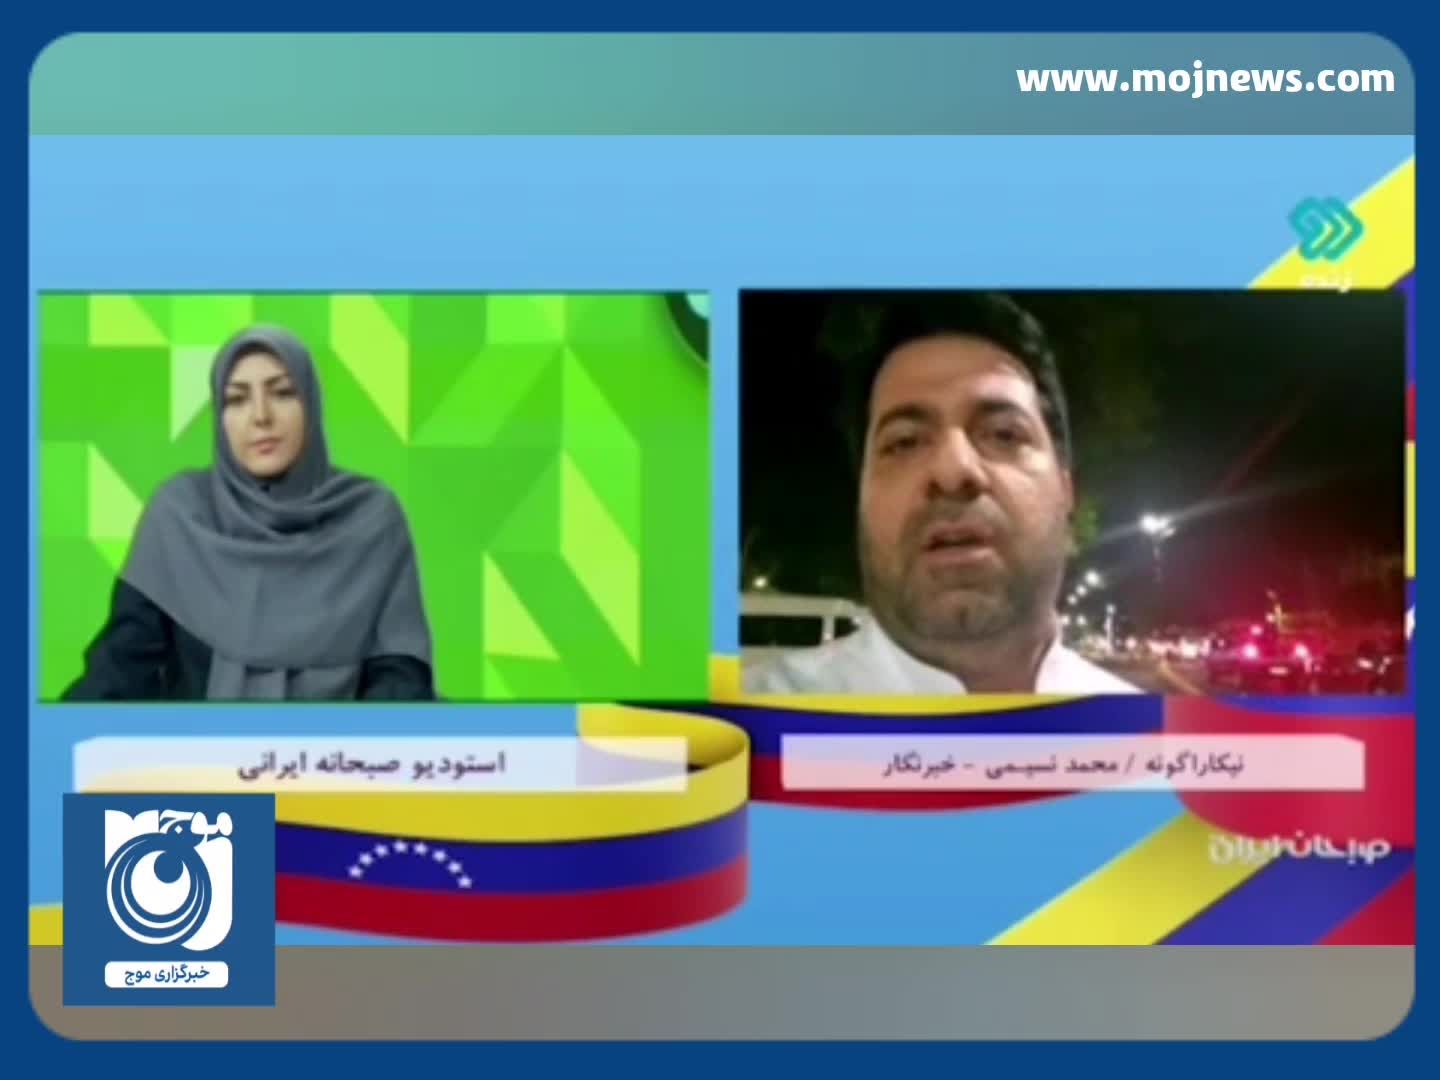 گزارش جالب خبرنگار ایرانی از علاقه مردم ونزوئلا به حاج قاسم سلیمانی + فیلم